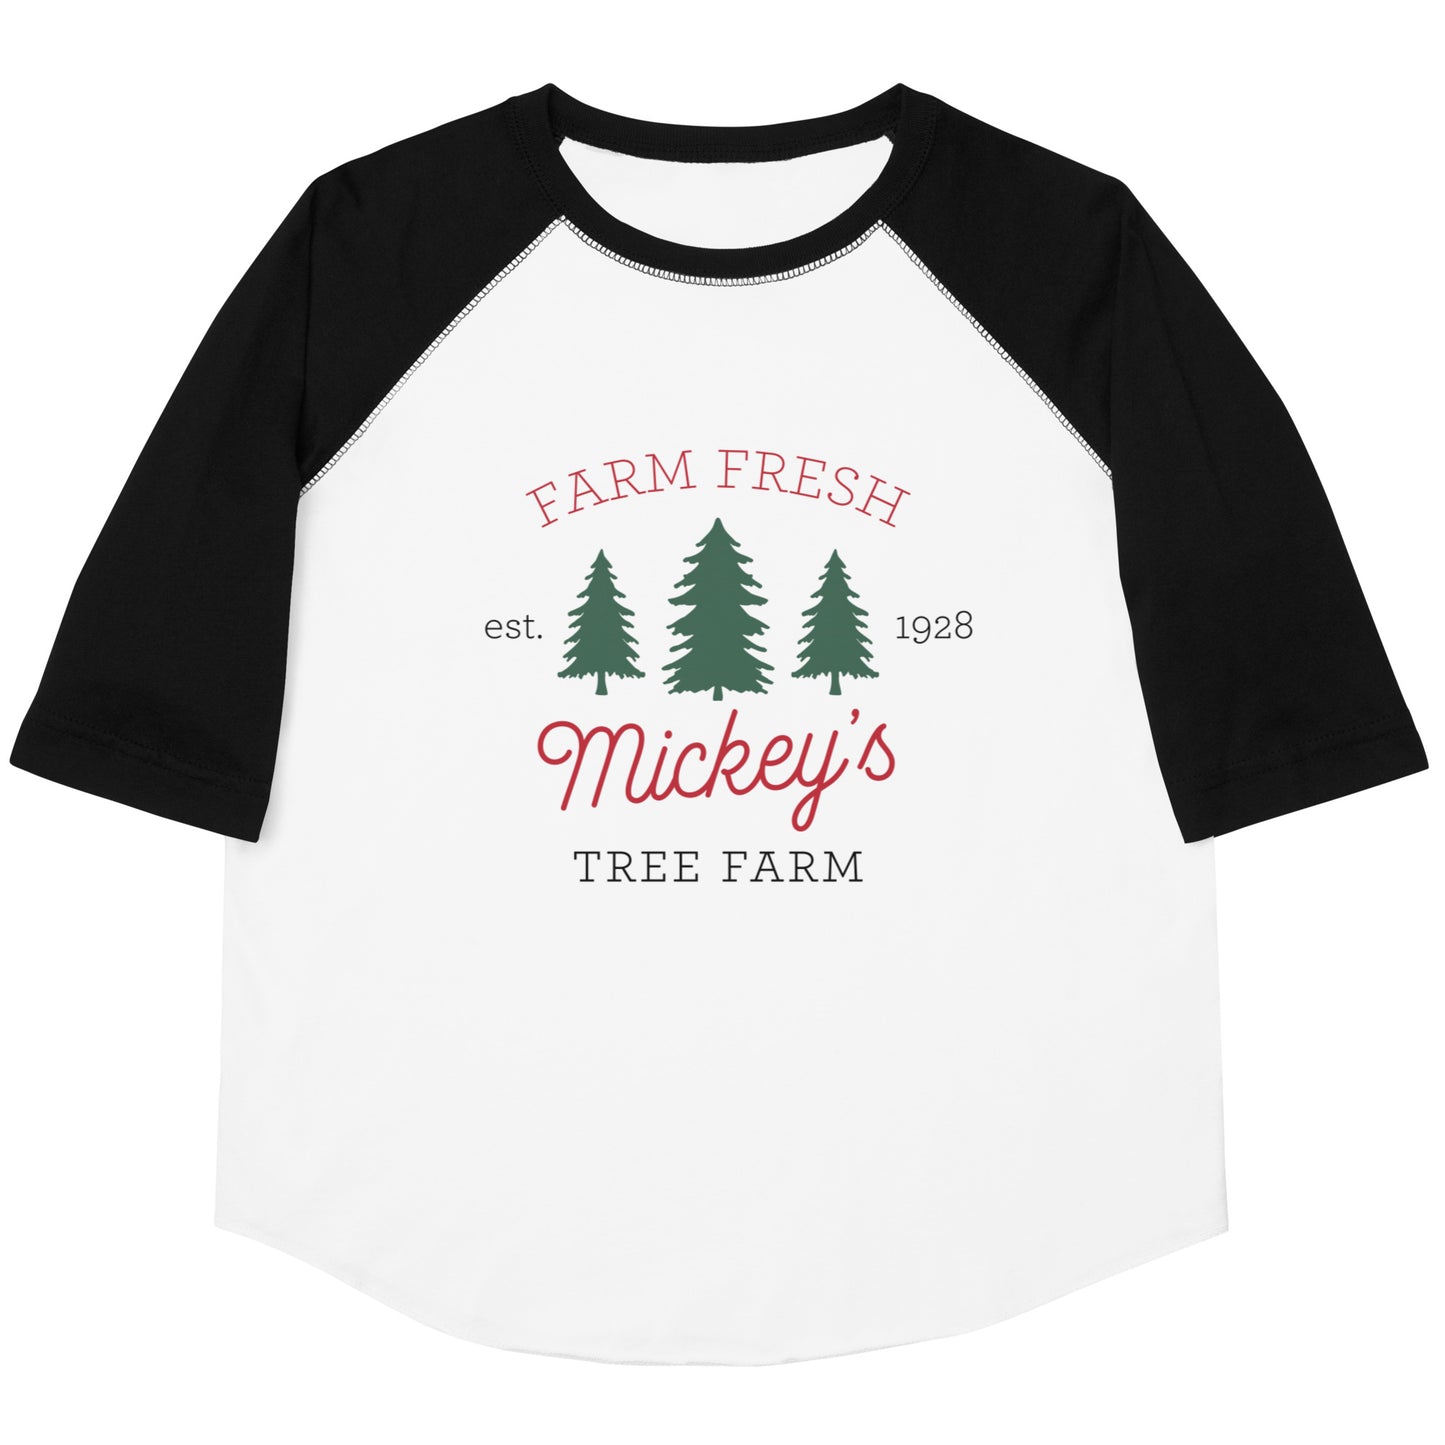 Christmas Mickey's Tree Farm YOUTH Baseball Shirt